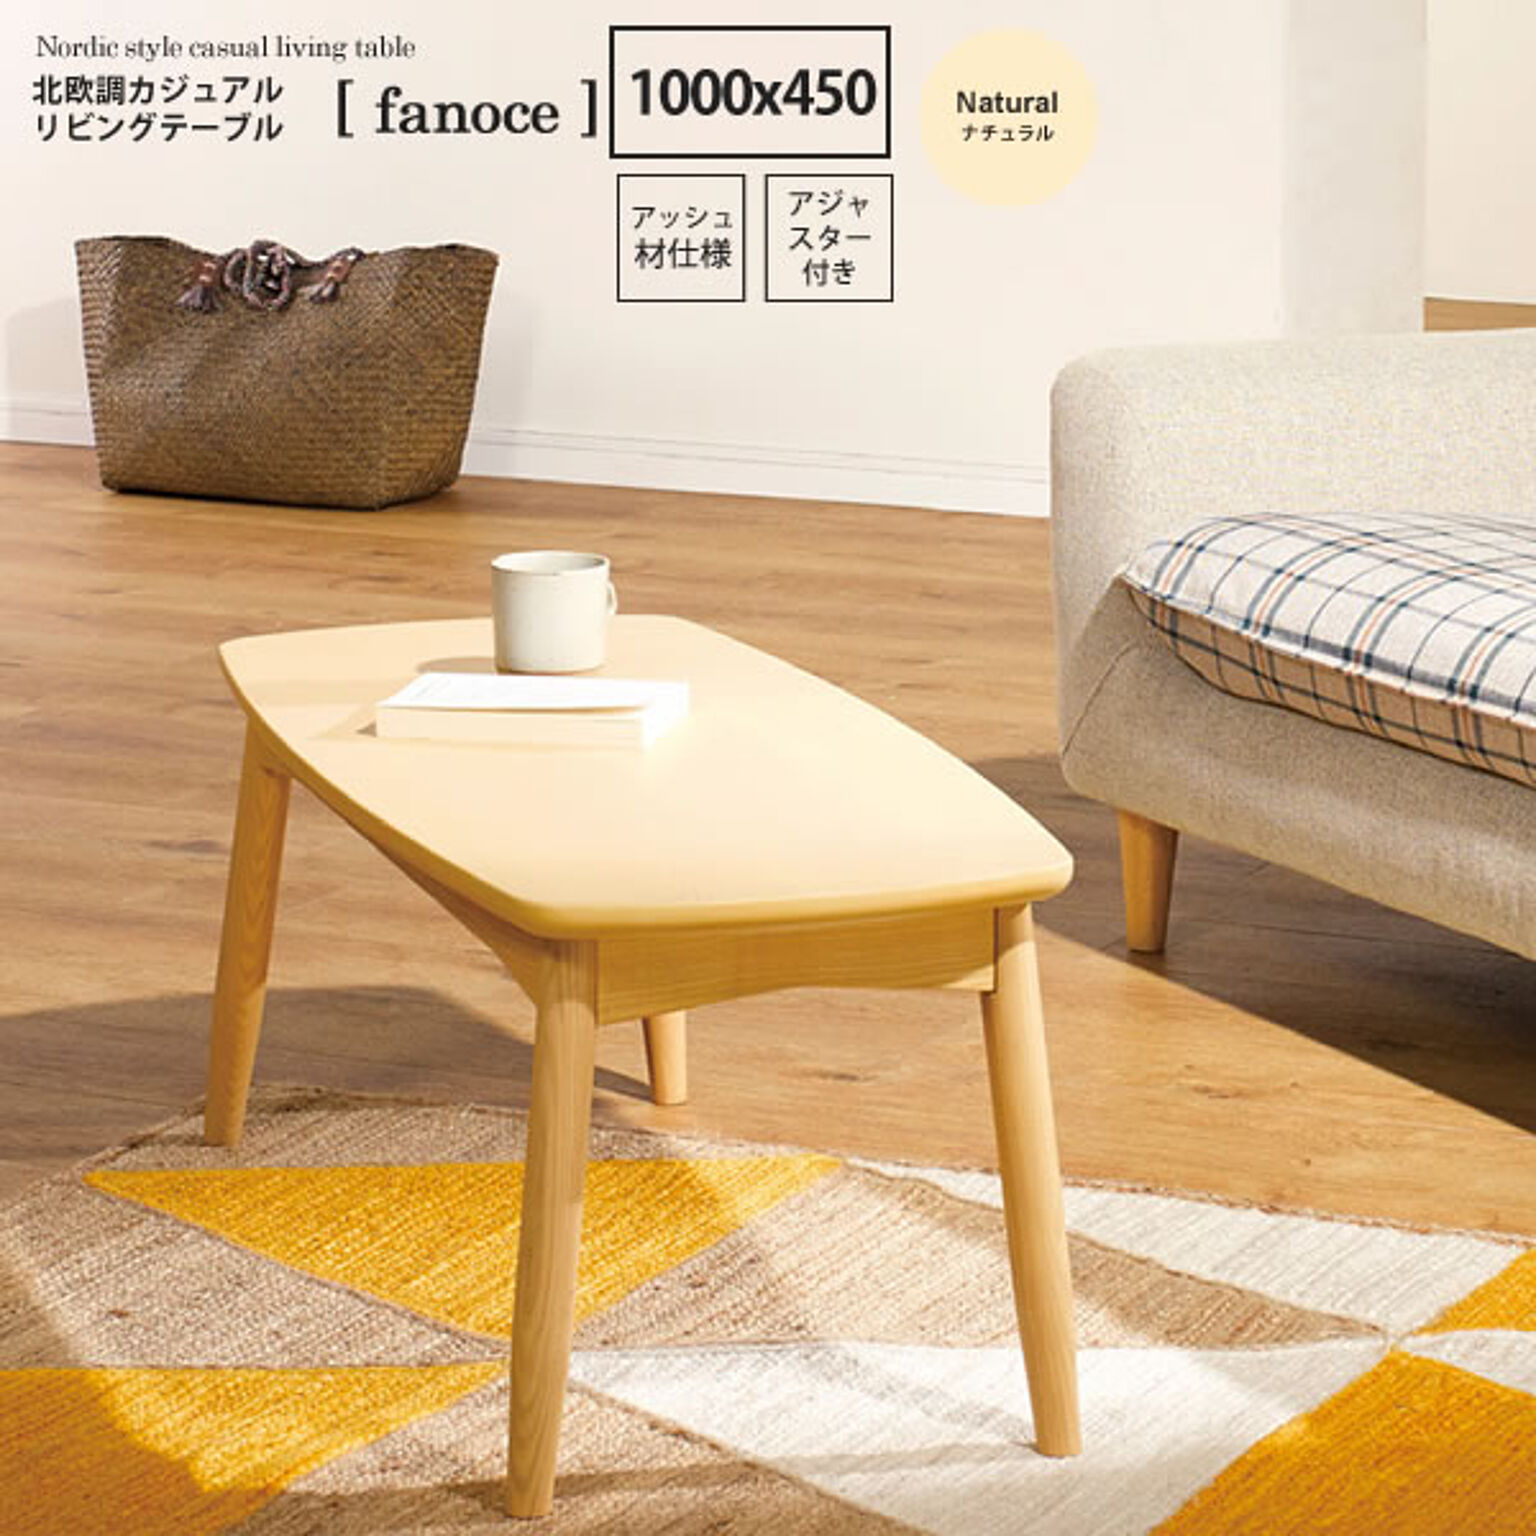 ナチュラル ： 北欧調カジュアルリビングテーブル【fanoce】 (ナチュラル) センターテーブル コーヒー カフェ ロータイプ 座卓 長方形 木製 シンプル 